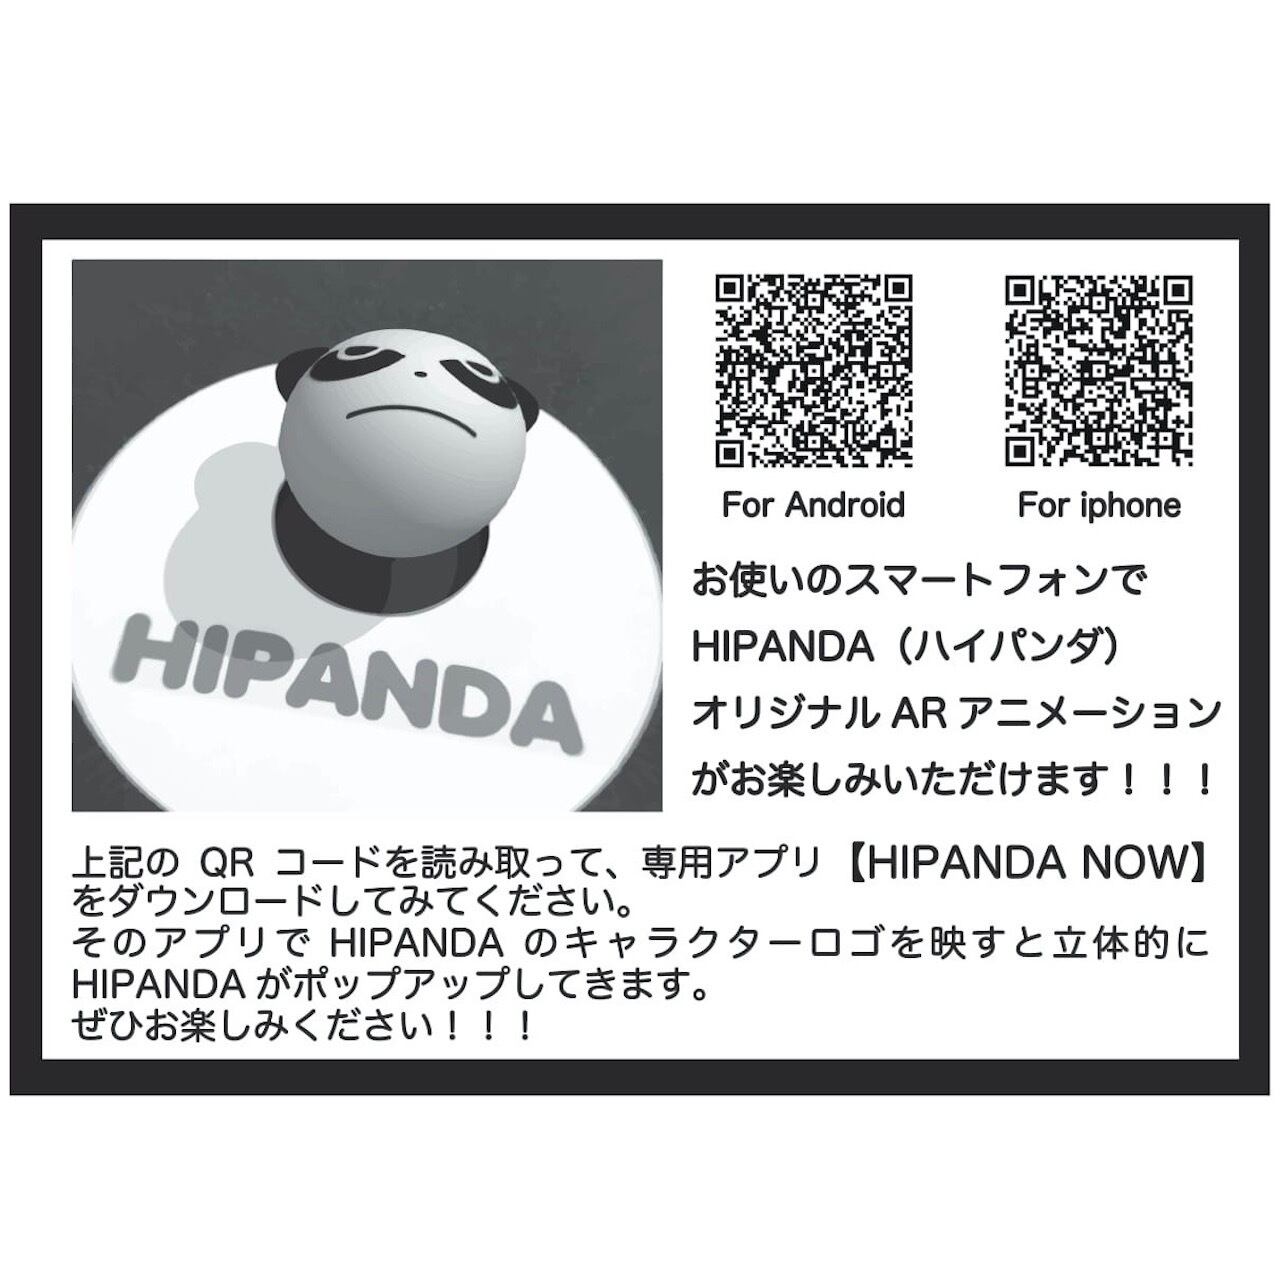 SALE 送料無料【HIPANDA ハイパンダ】レディース ファスナーデザイン